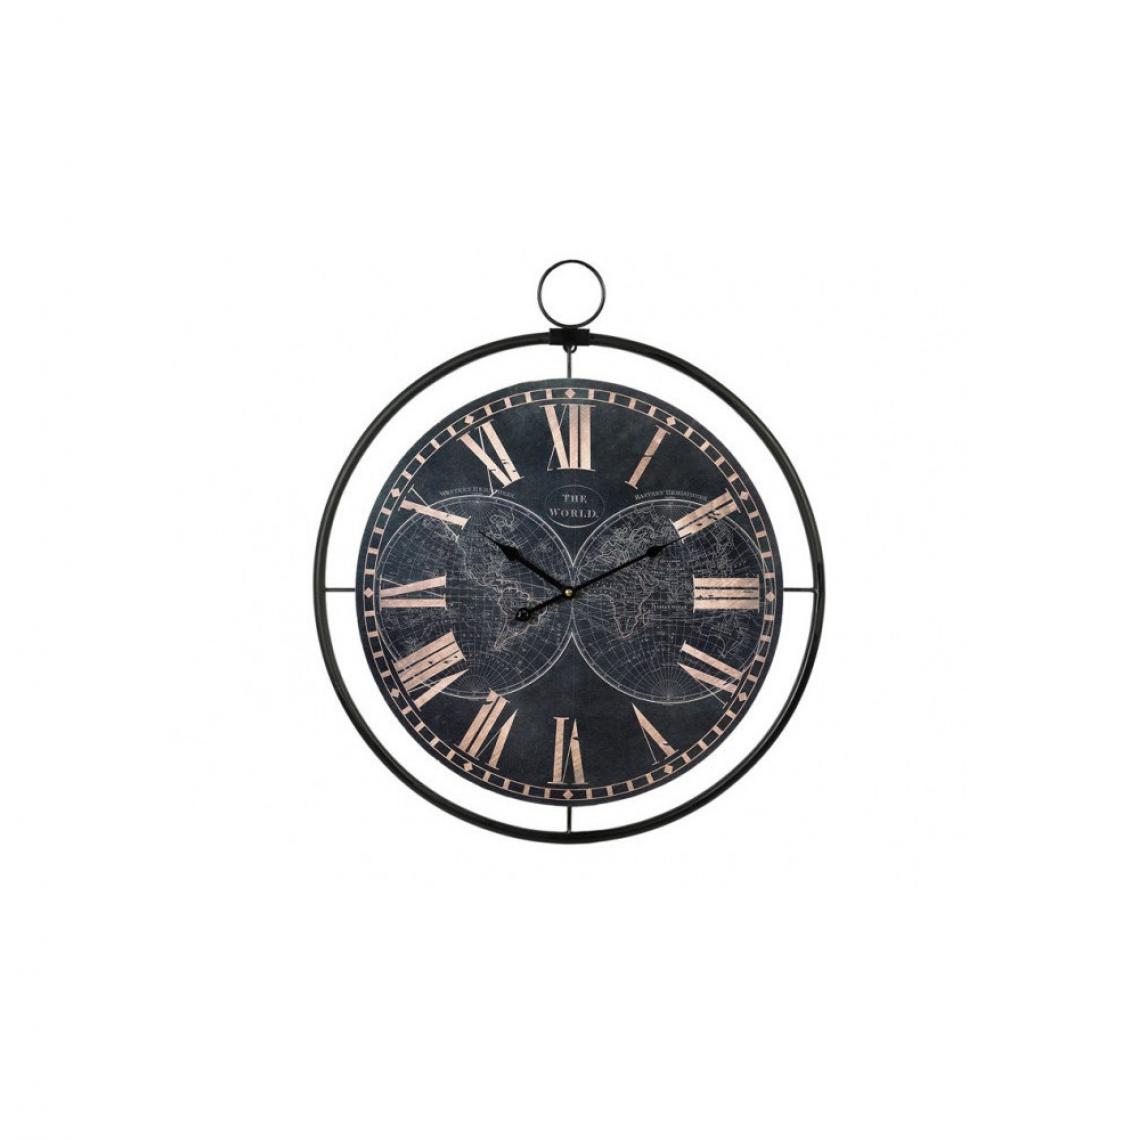 Ac-Deco - Horloge globe terrestre - D 60 cm - Noir et cuivré - Horloges, pendules